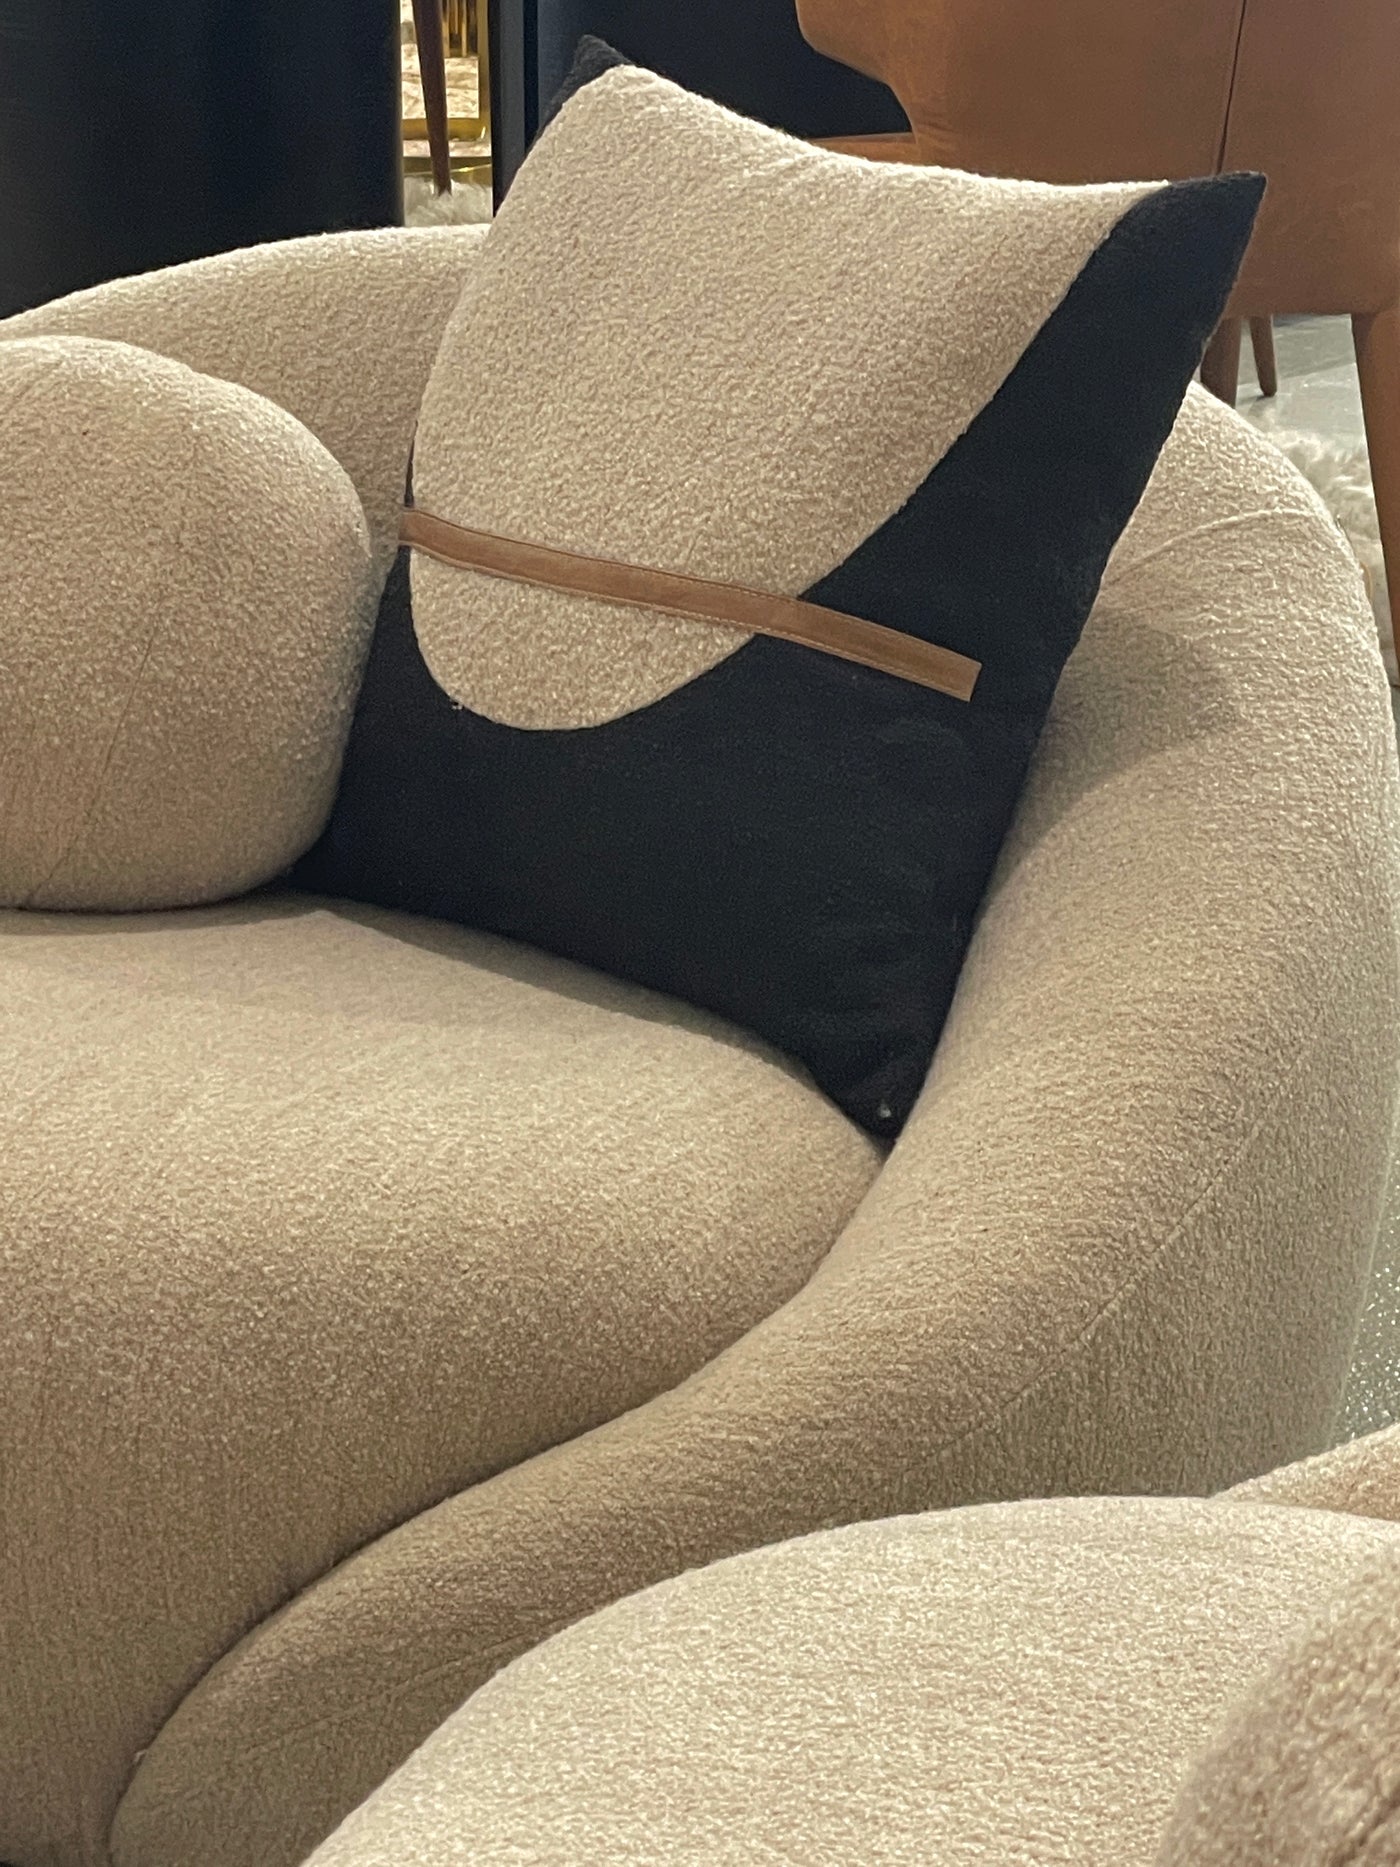 Cuddle Chair - Future Classics Furniture